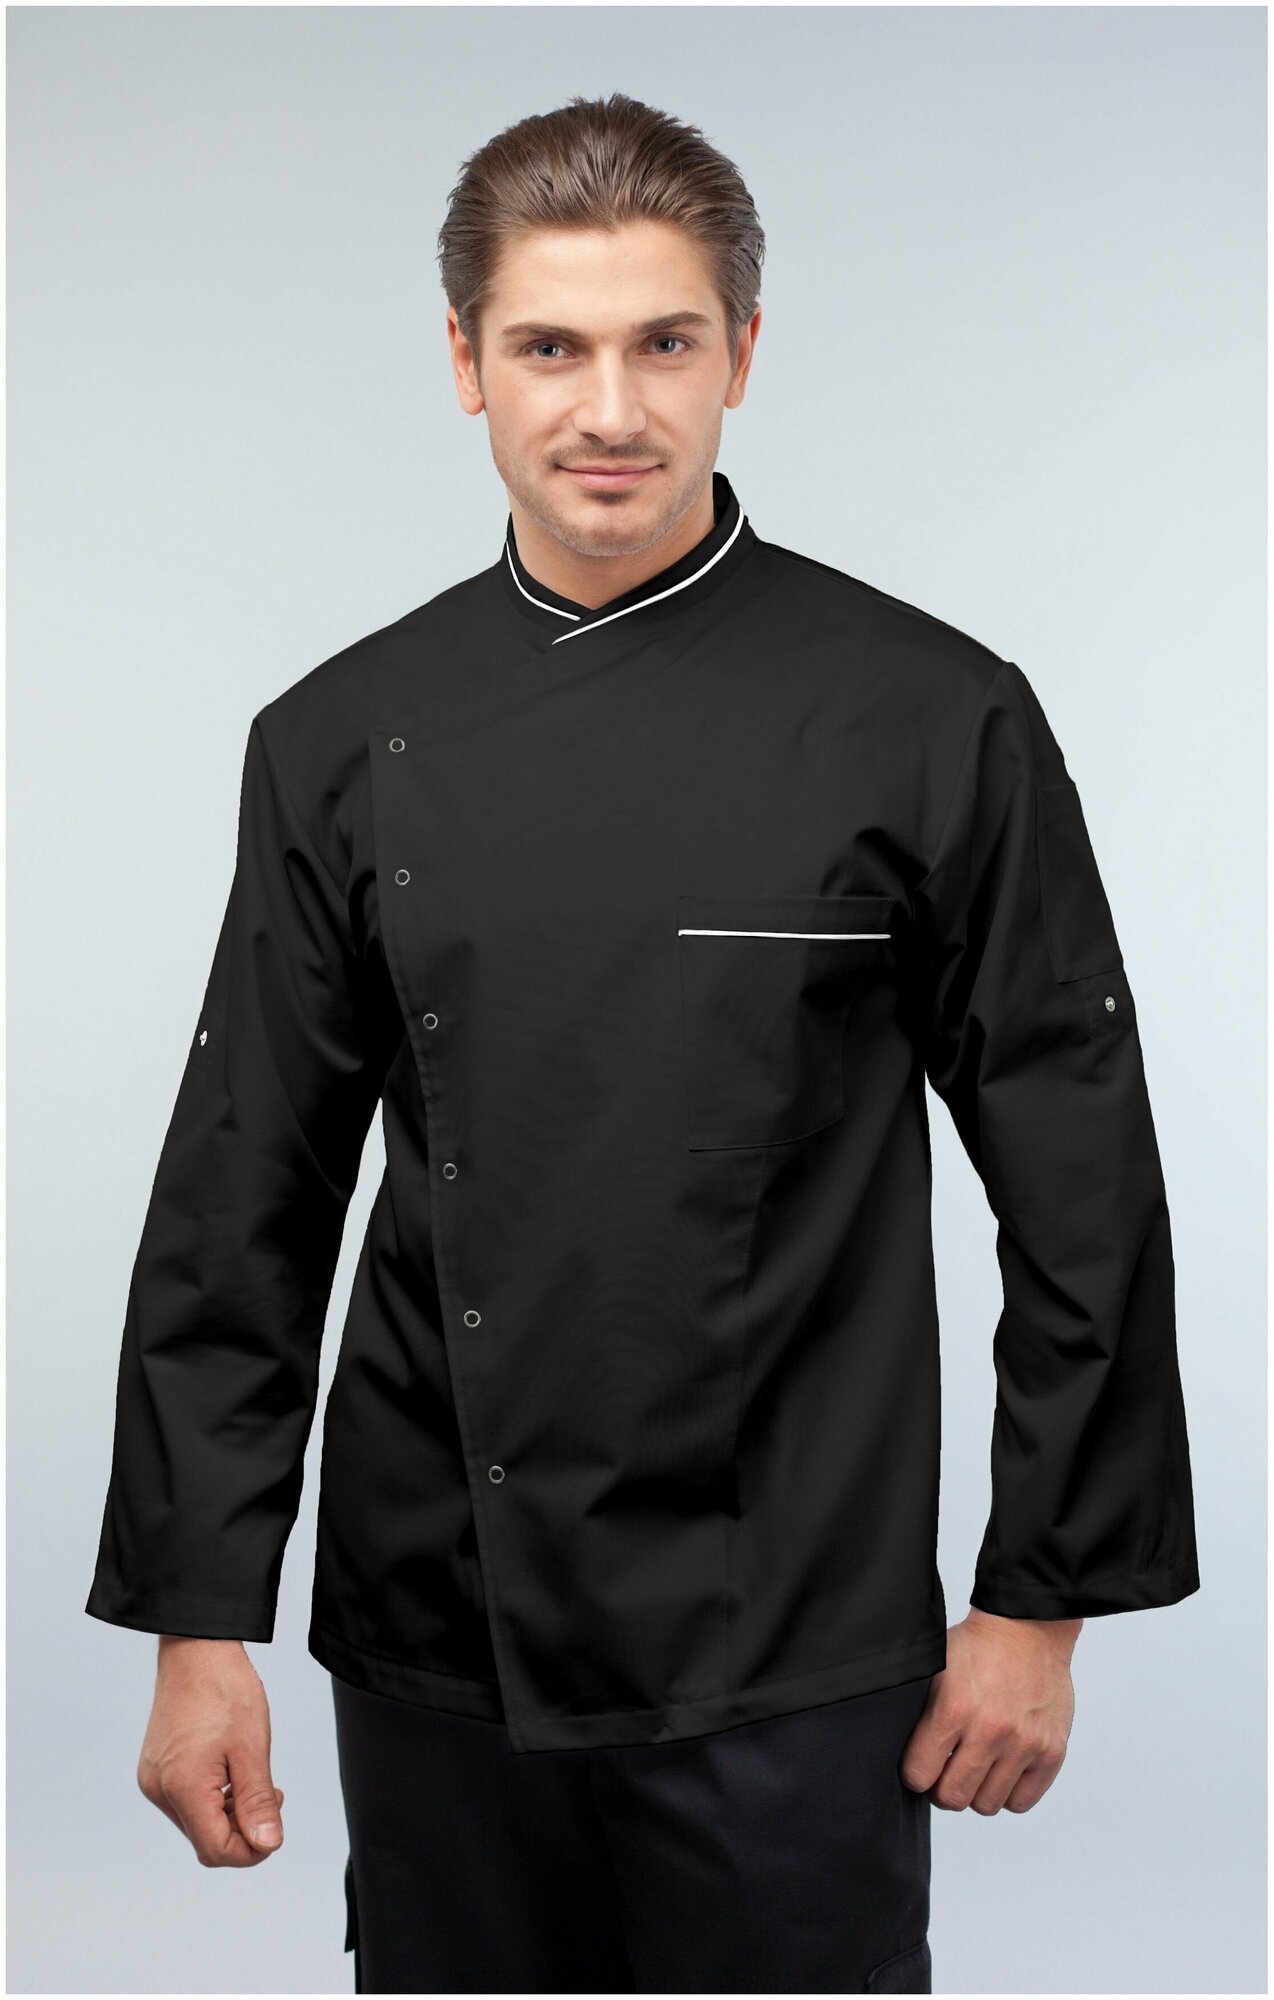 Куртка для повара мужская/Китель поварской мужской Uniforms (цвет чёрный с белым кантом, 42 размер)